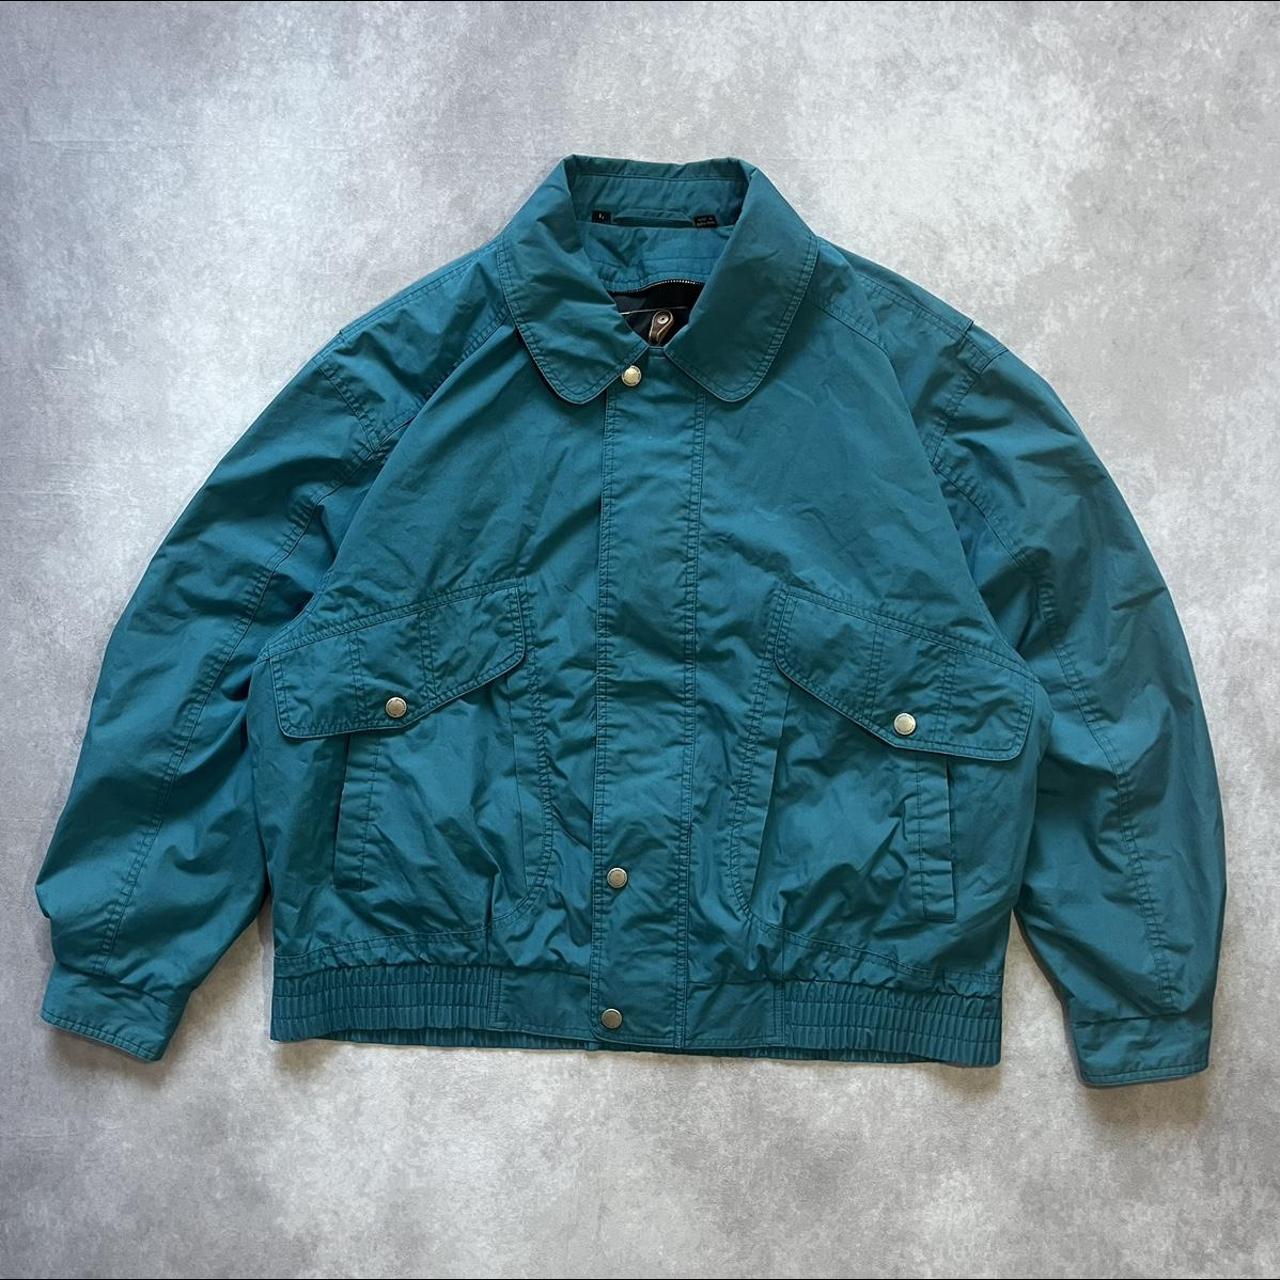 Vintage Blue Jacket ♻️ ABOUT THE ITMEN... - Depop